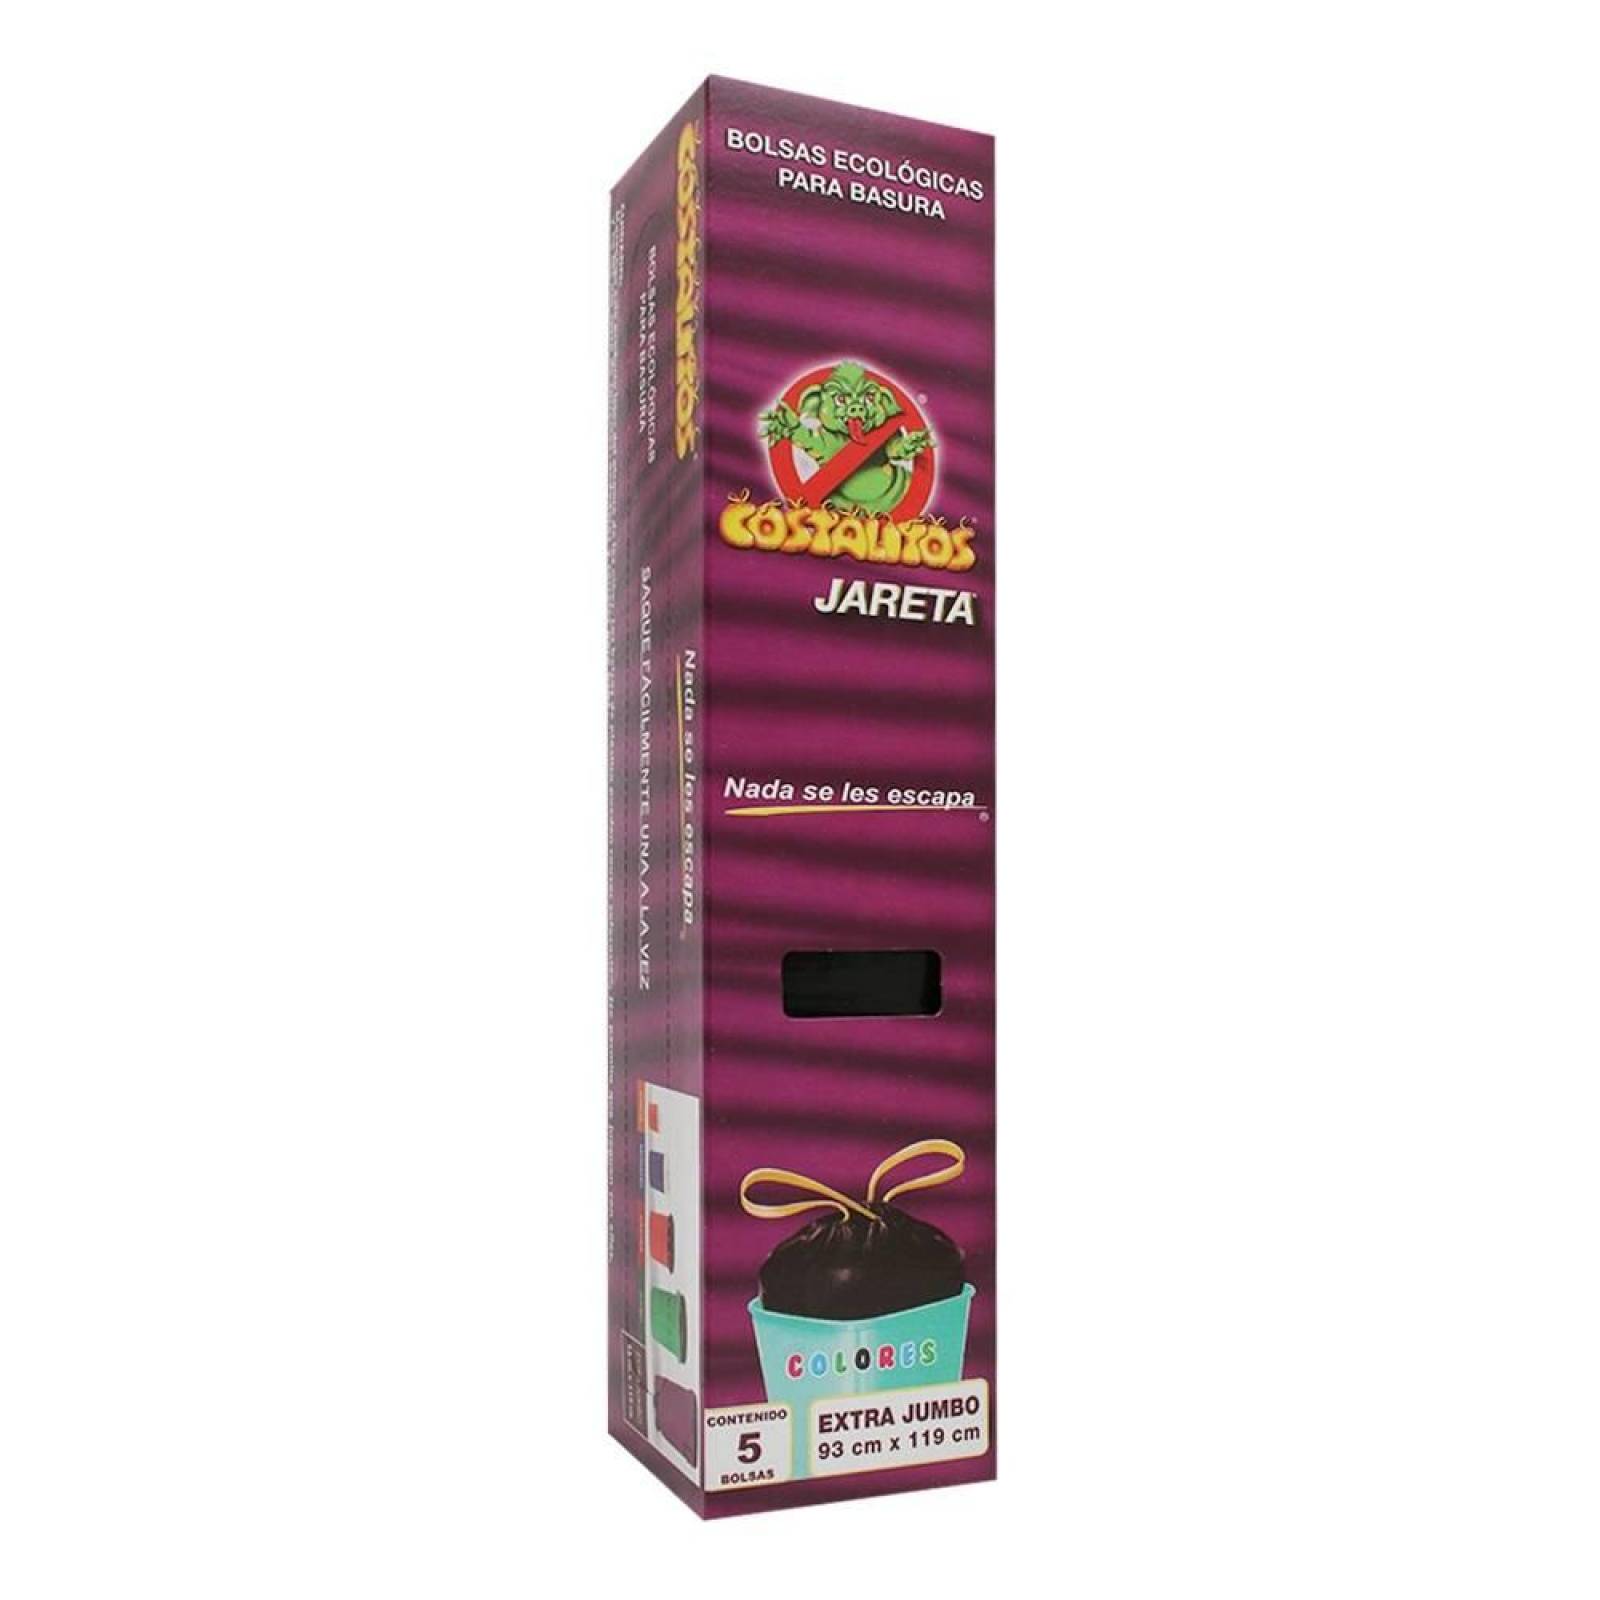 Costalitos Bolsa para Basura Aroma Cítrico Extra Jumbo caja 6 piezas 